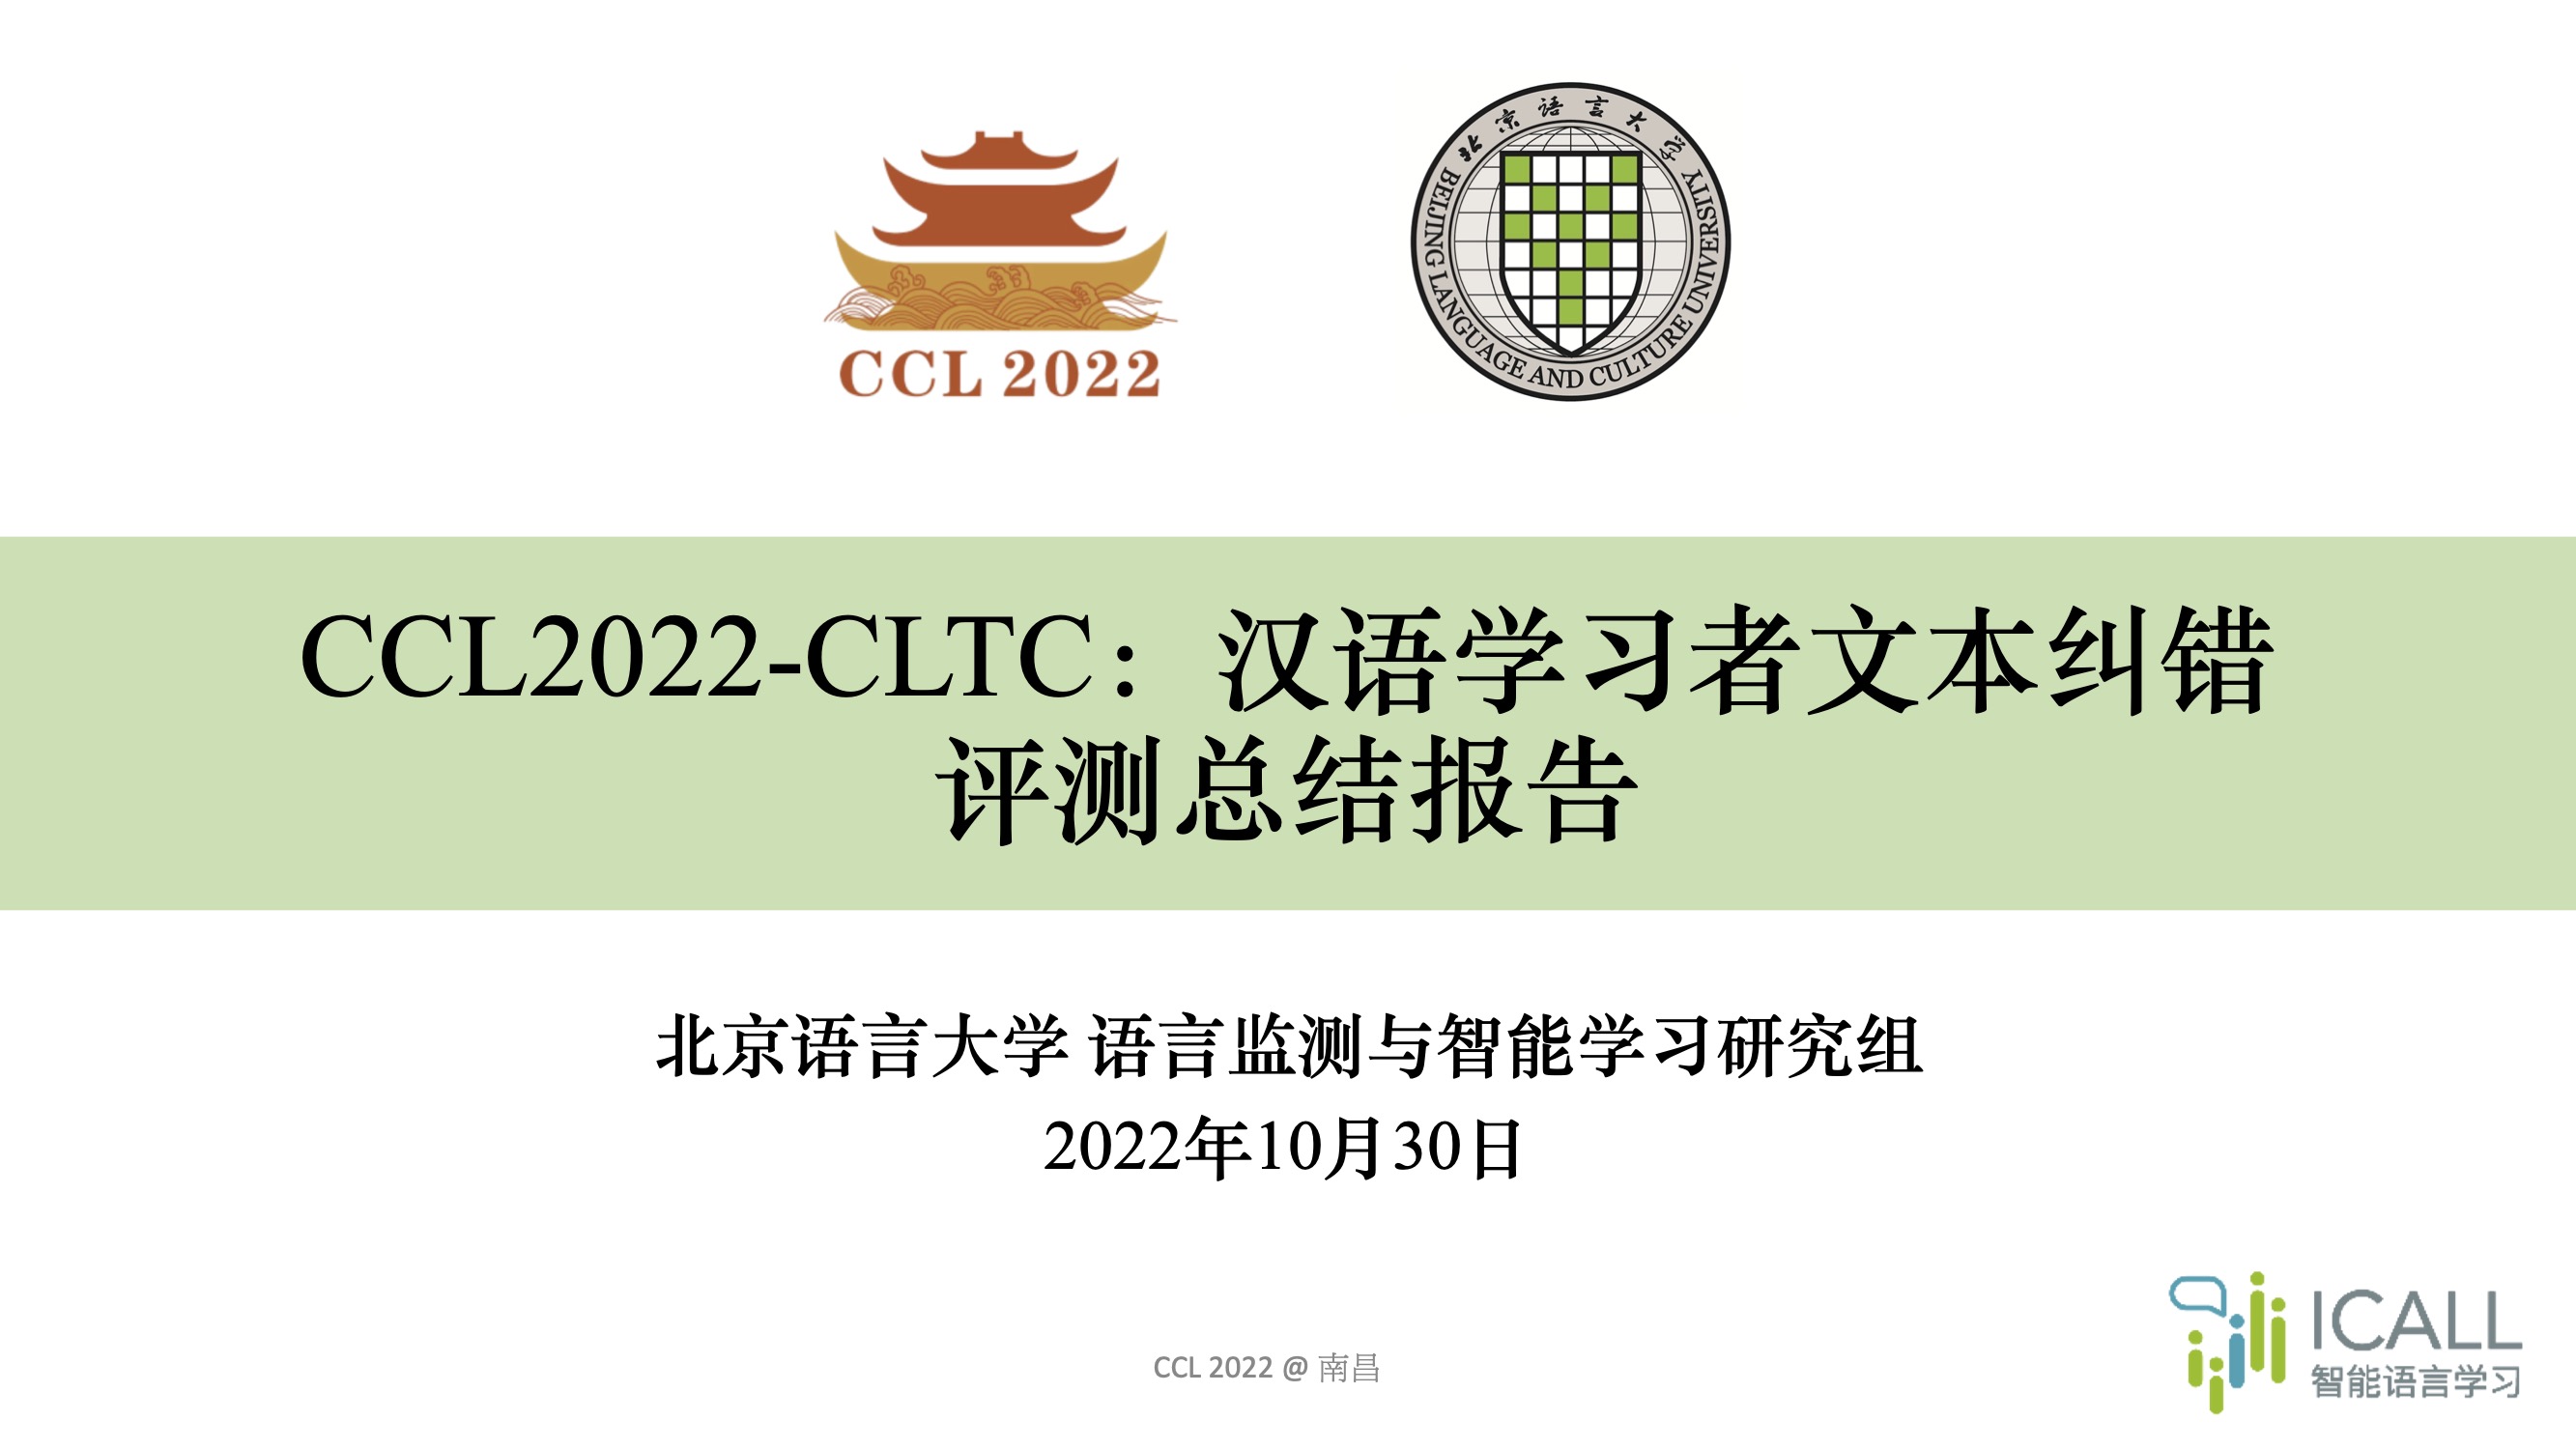 新闻 \| CLTC 2022 评测研讨会圆满落幕